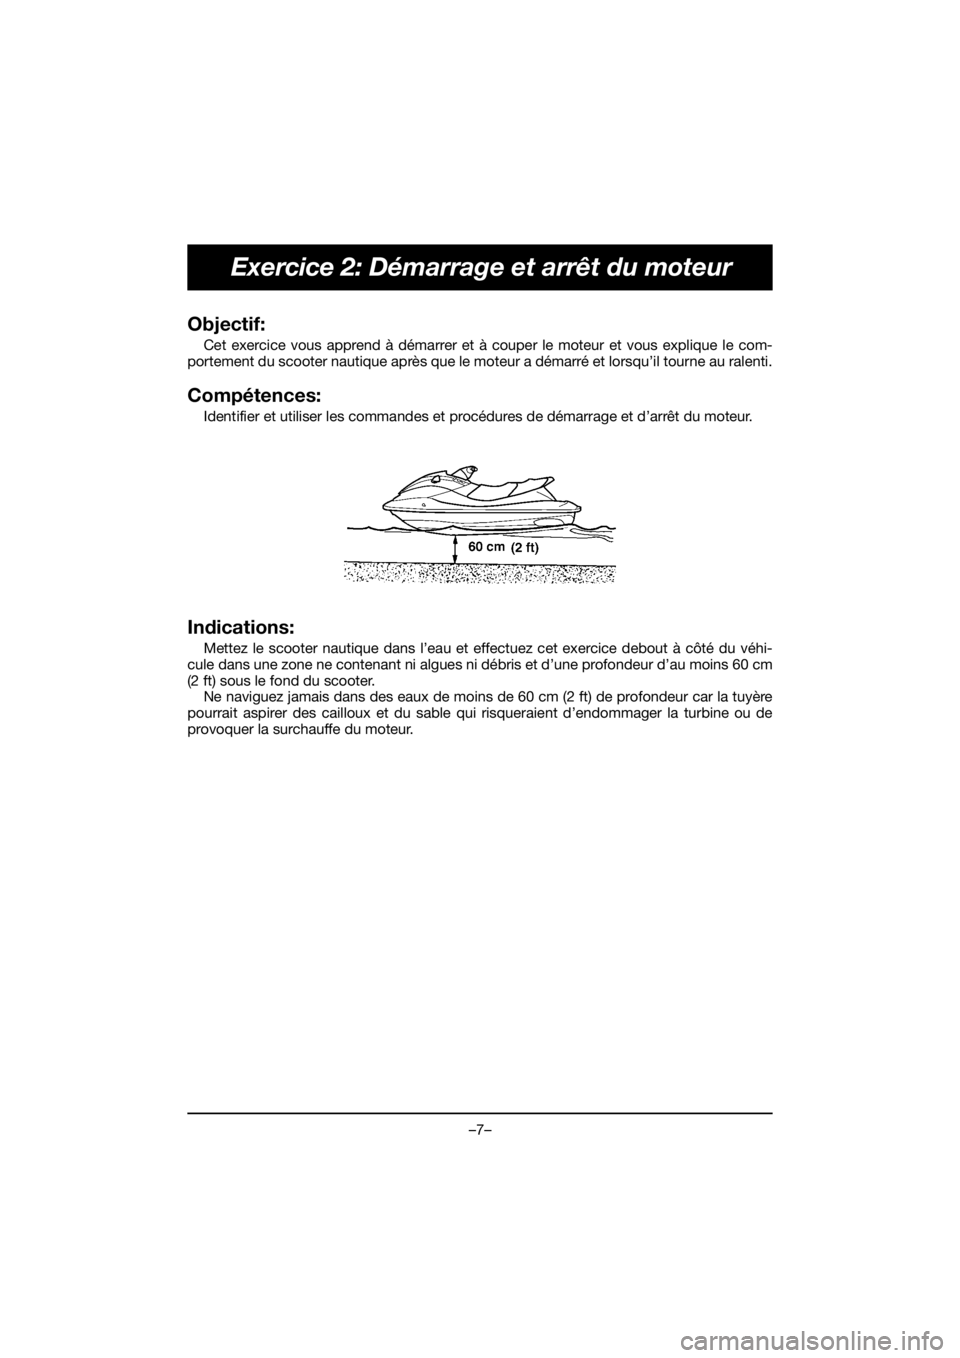 YAMAHA VX DELUXE 2019  Manual de utilização (in Portuguese) –7–
Exercice 2: Démarrage et arrêt du moteur
Objectif: 
Cet exercice vous apprend à démarrer et à couper le moteur et vous explique le com-
portement du scooter nautique après que le moteur 